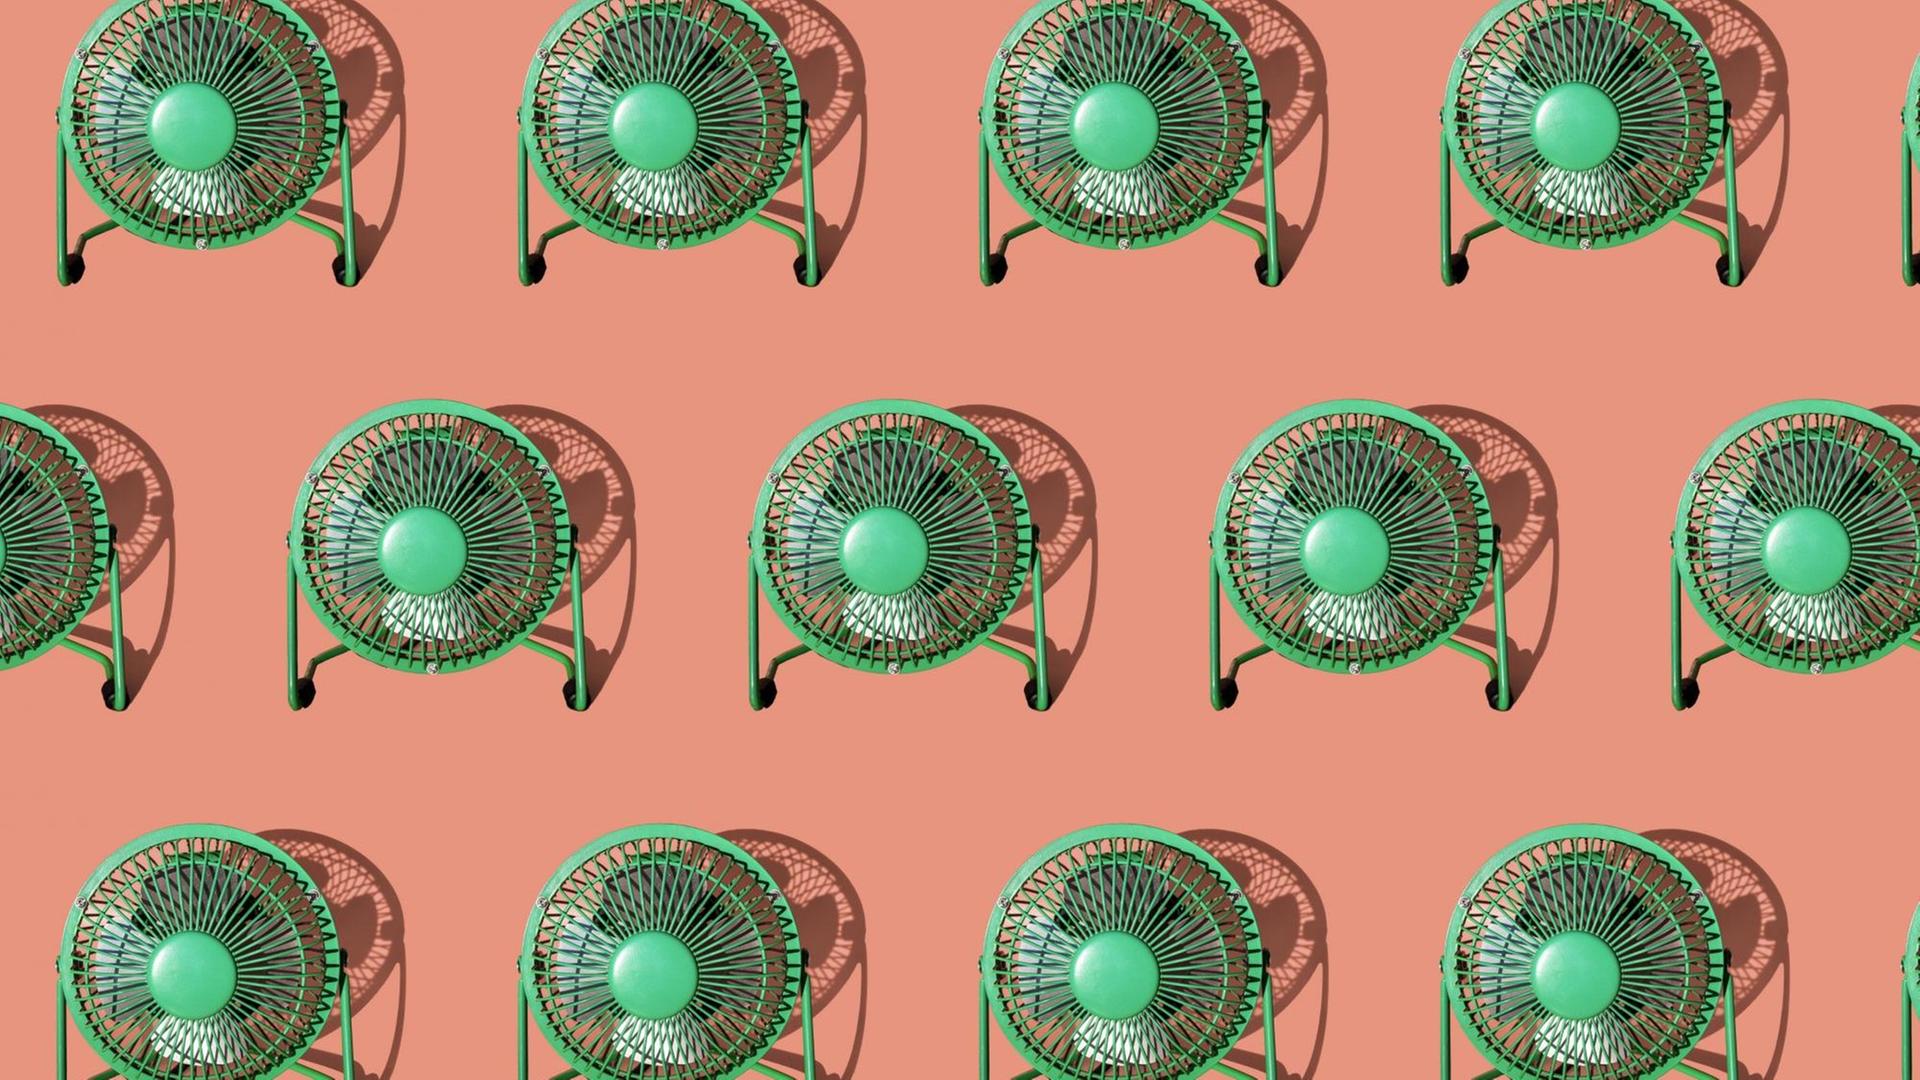 Illustration von grünen Ventilatoren auf lachsfarbenem Grund